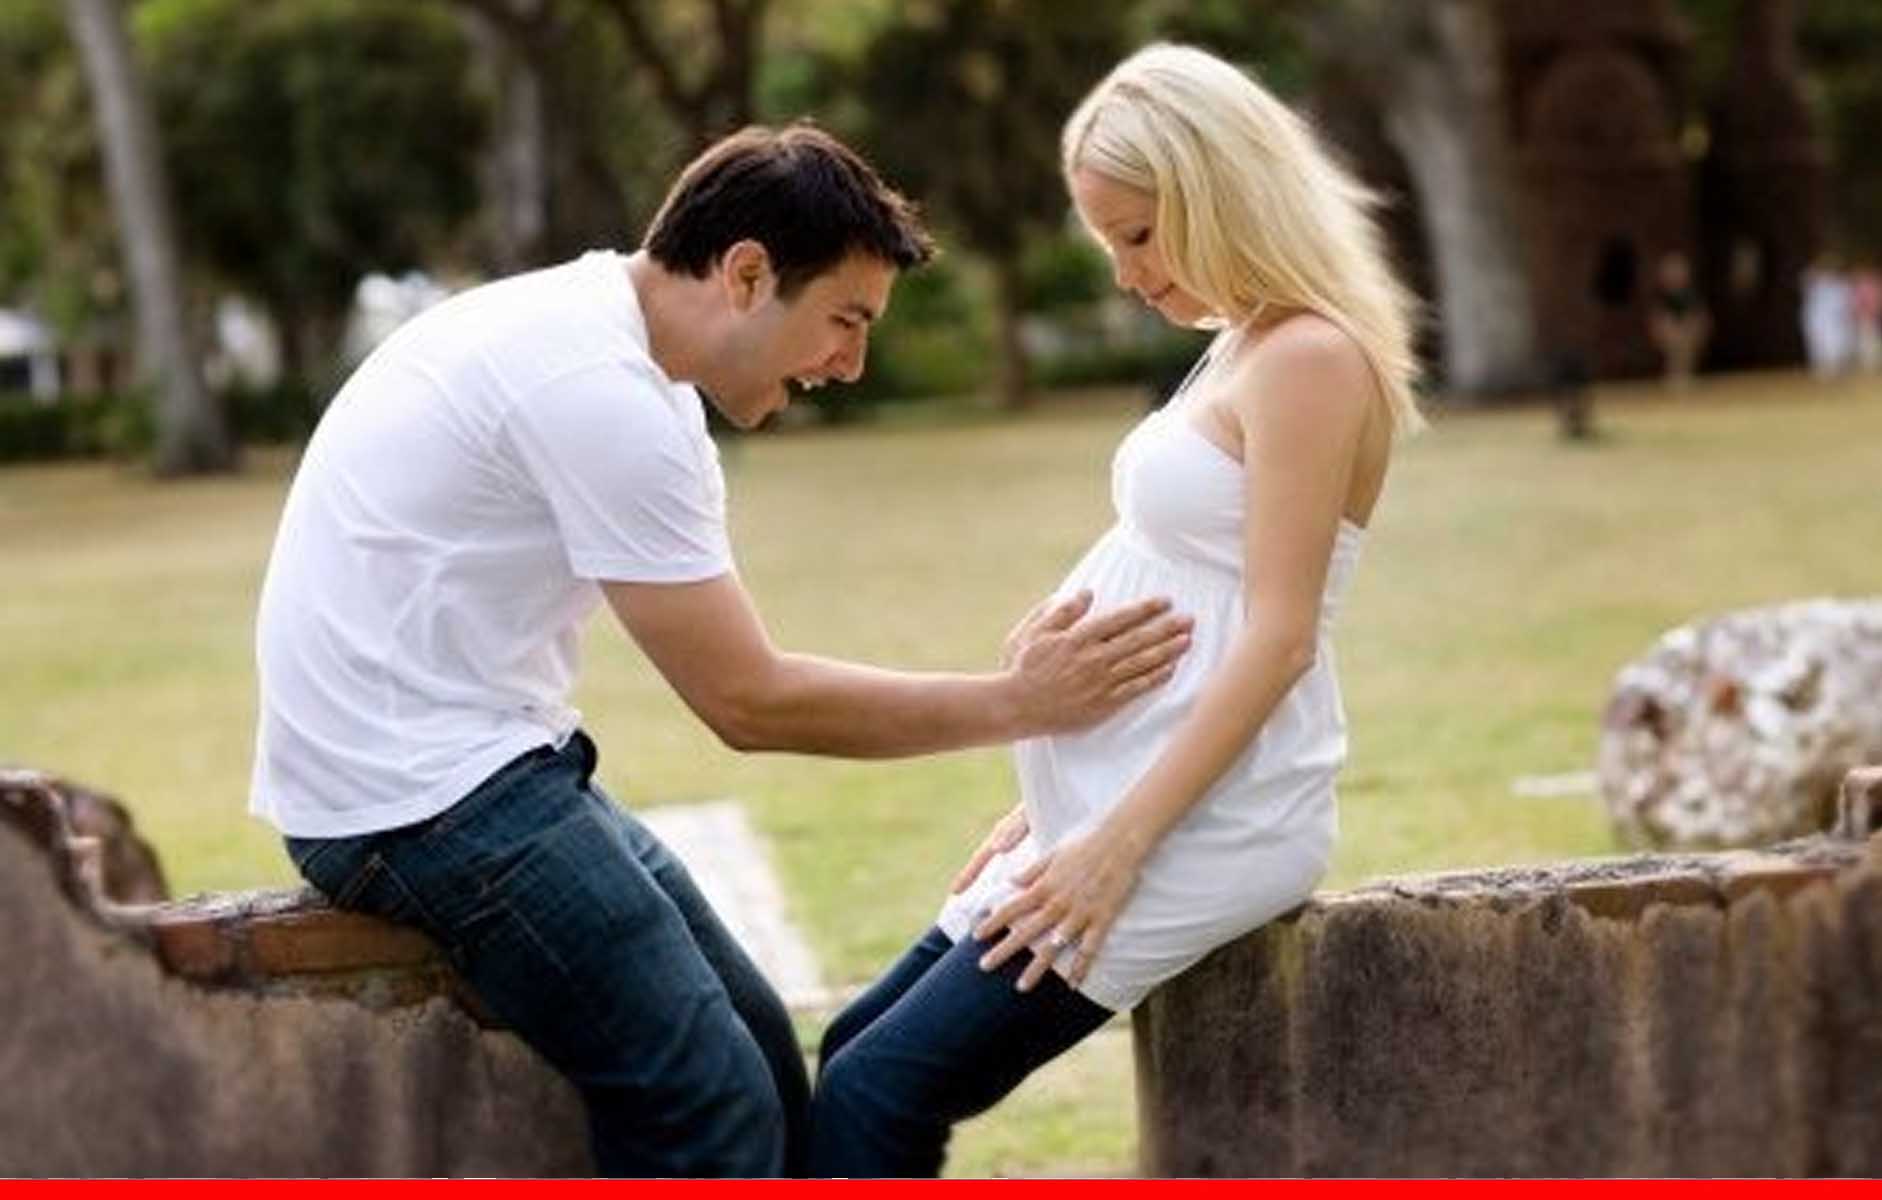 गर्भावस्था के दौरान पत्नी को खुश रखने के लिए ​करने चाहिए ये काम